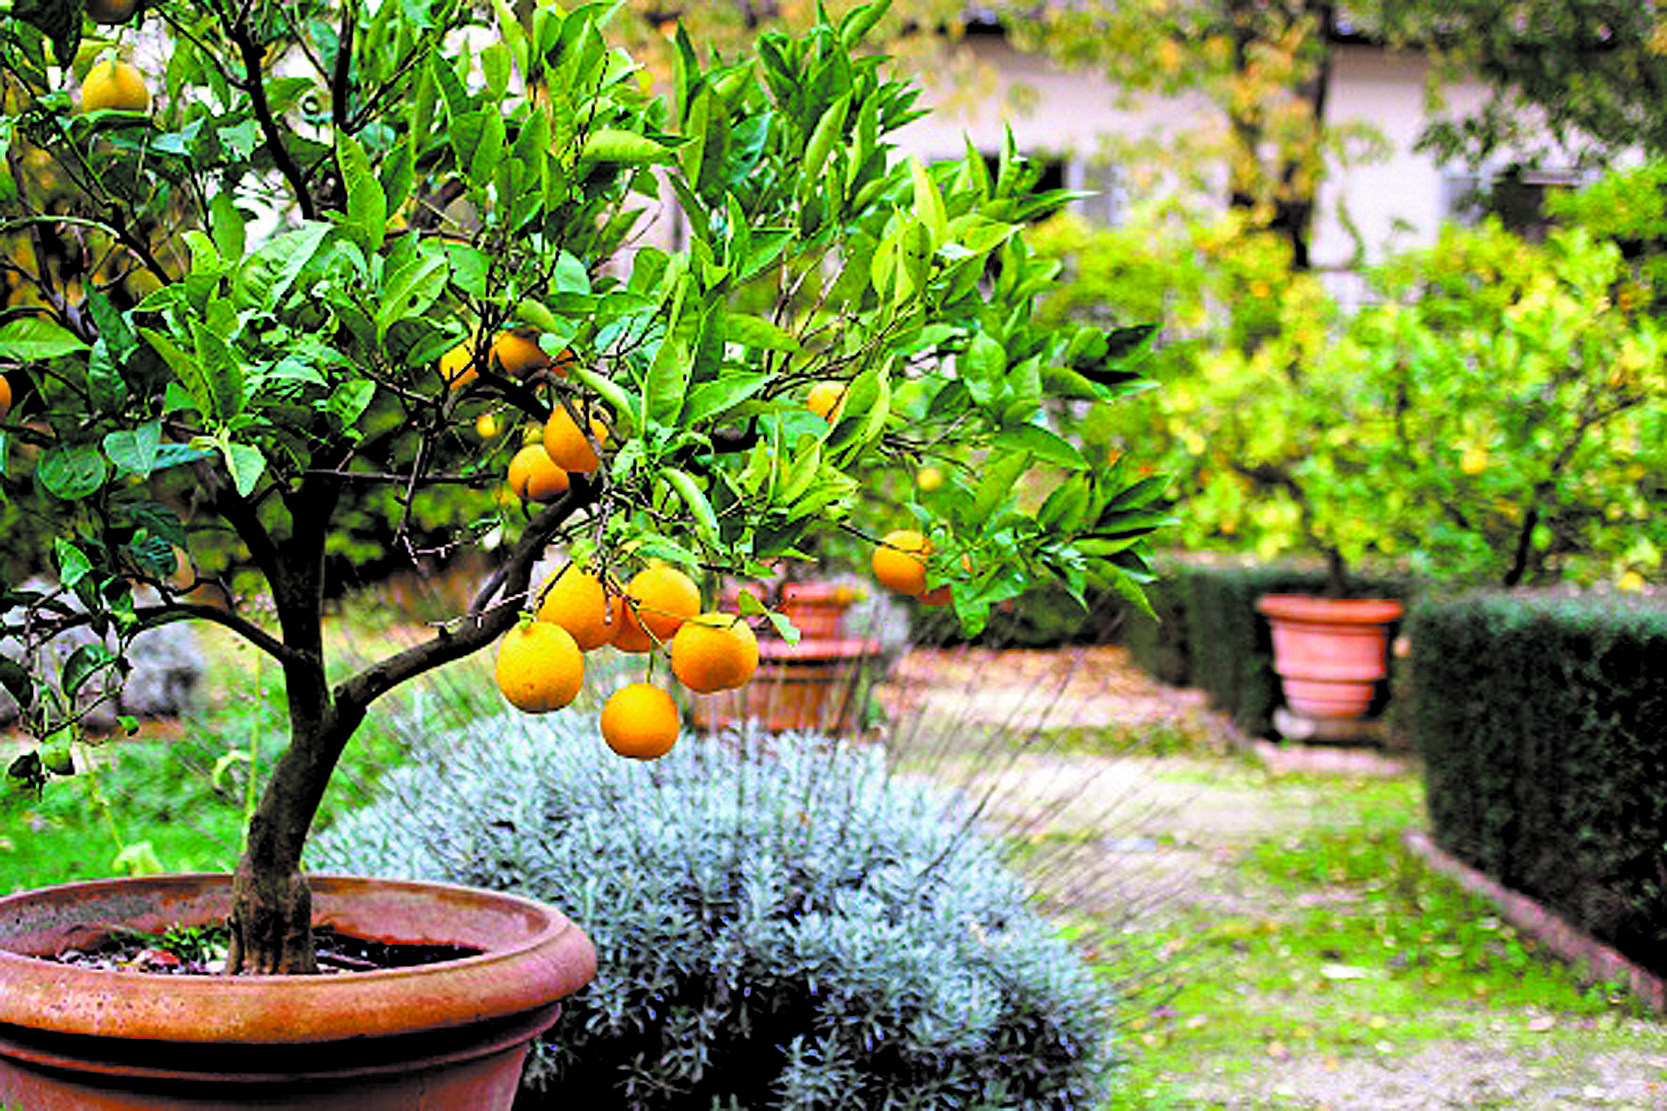 ¿Un pequeño limonero en el patio es posible?. Sí. Teniendo algunas precauciones podemos cultivar nuestros propios limones.